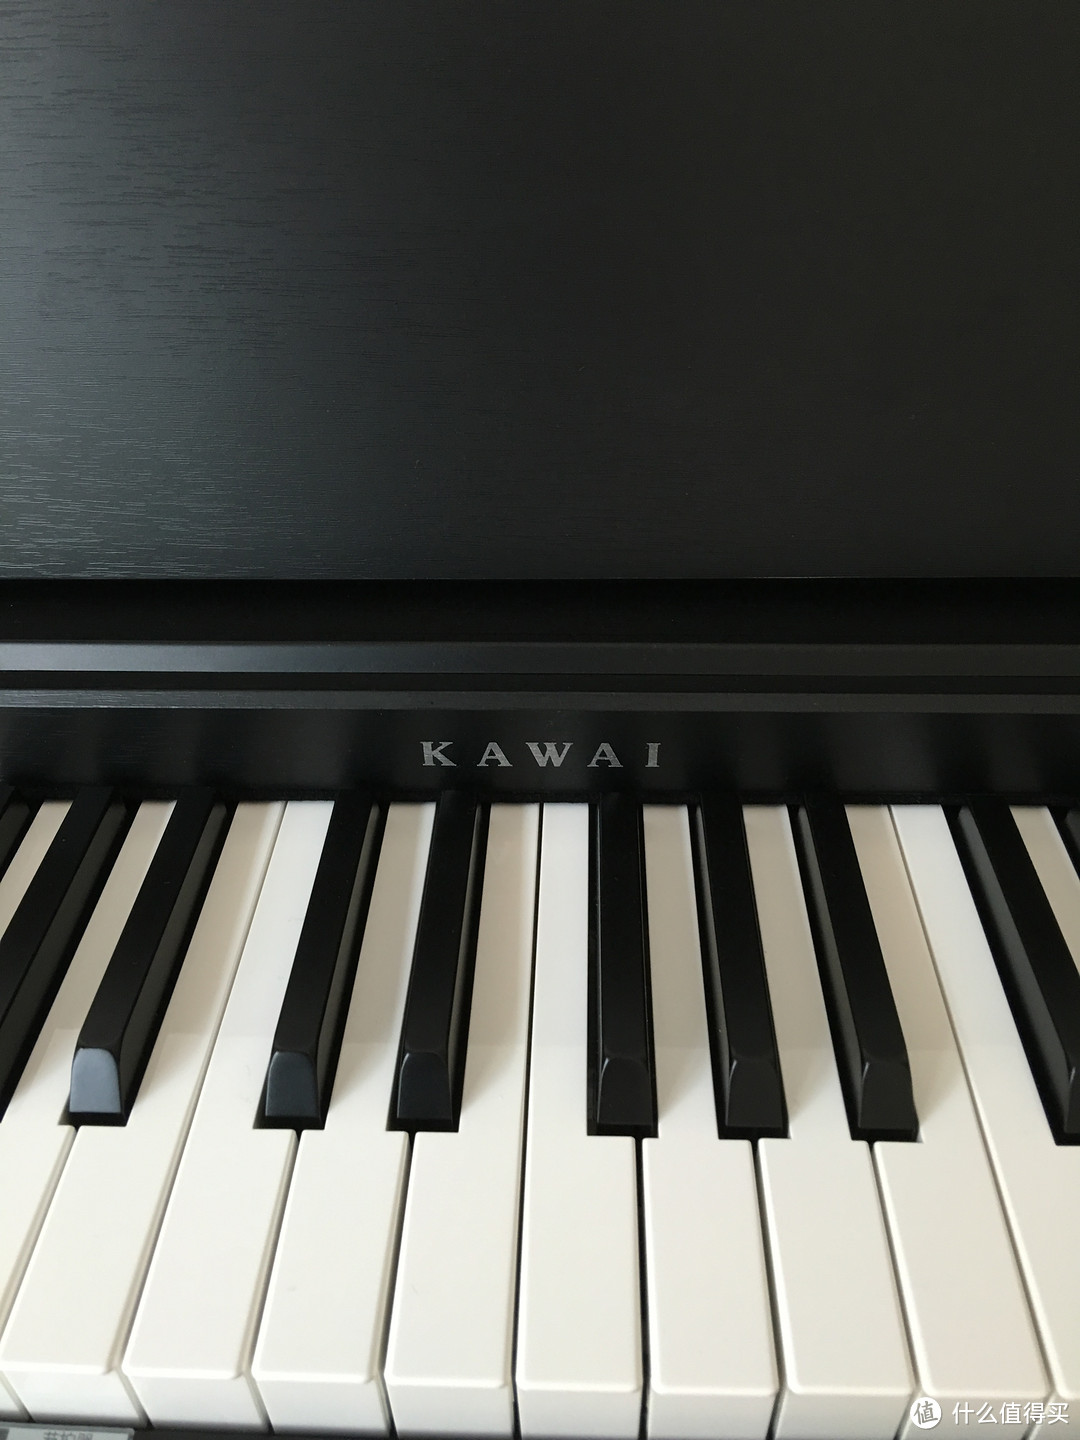 屌丝奶爸也有音乐梦——KAWAI 卡瓦依 CL26 III 88 键数码钢琴开箱简晒